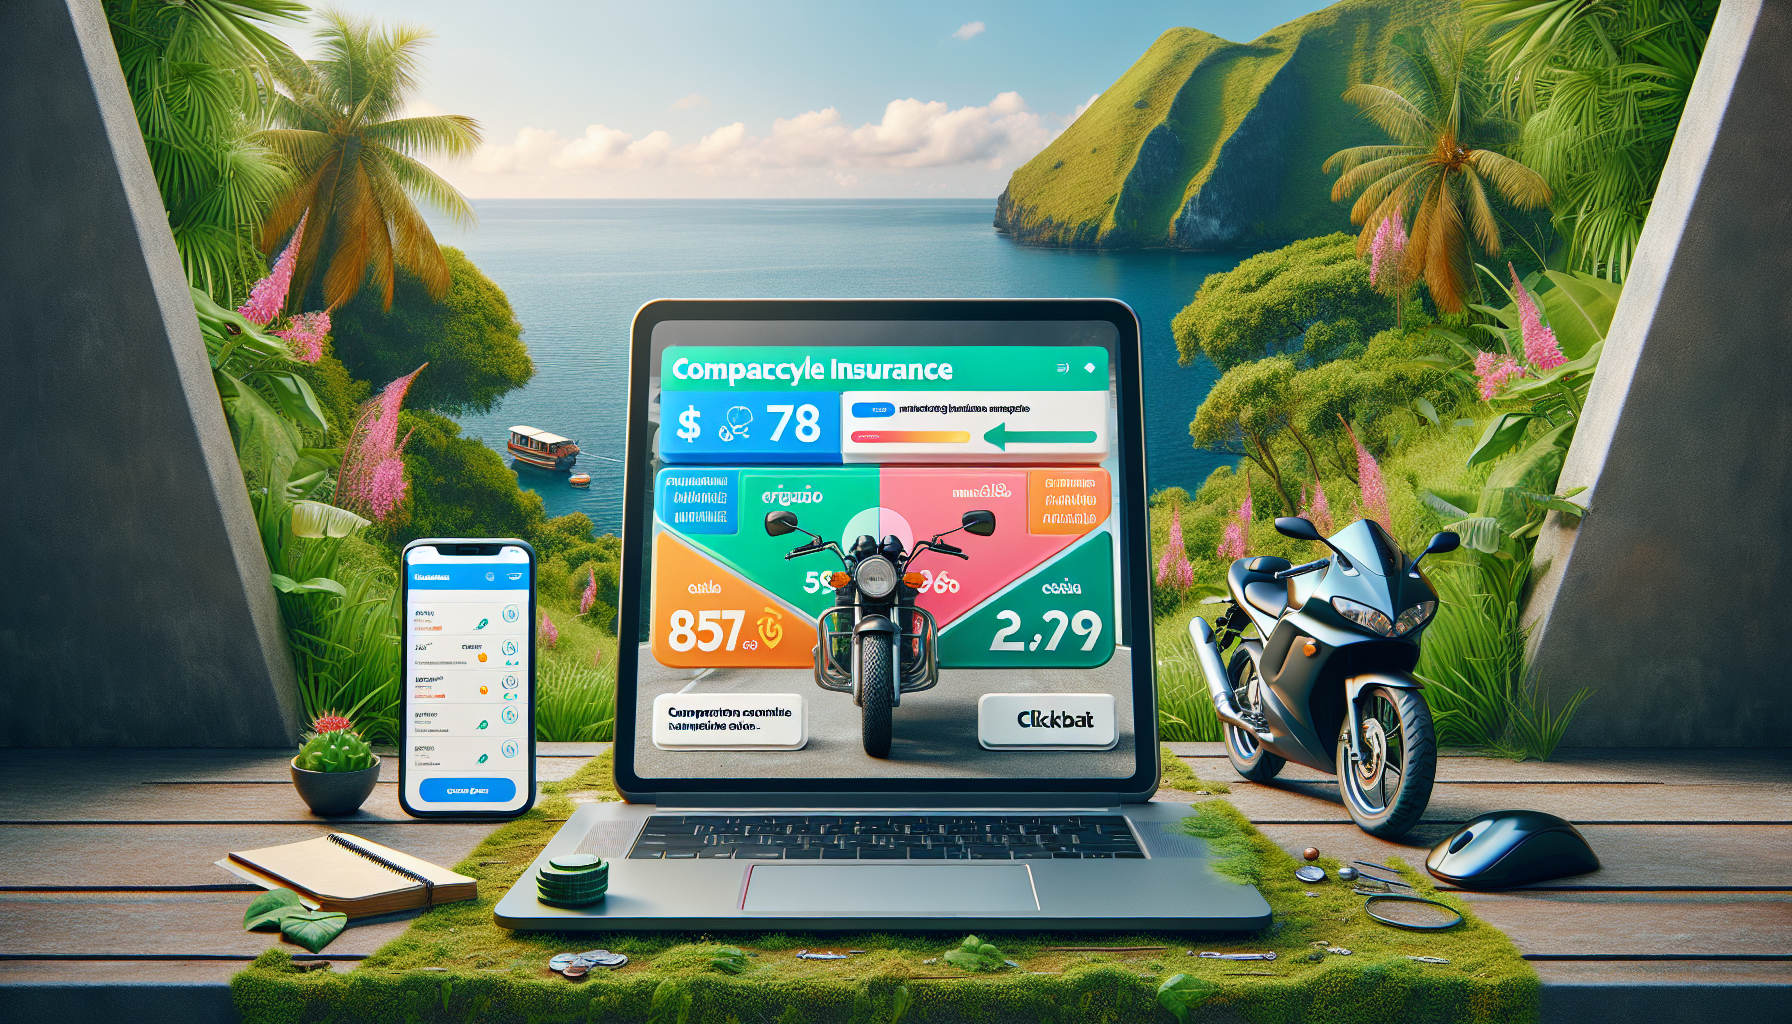 assurance moto 974 : comparez en ligne les meilleures assurances moto à la réunion avec nos outils de comparaison.